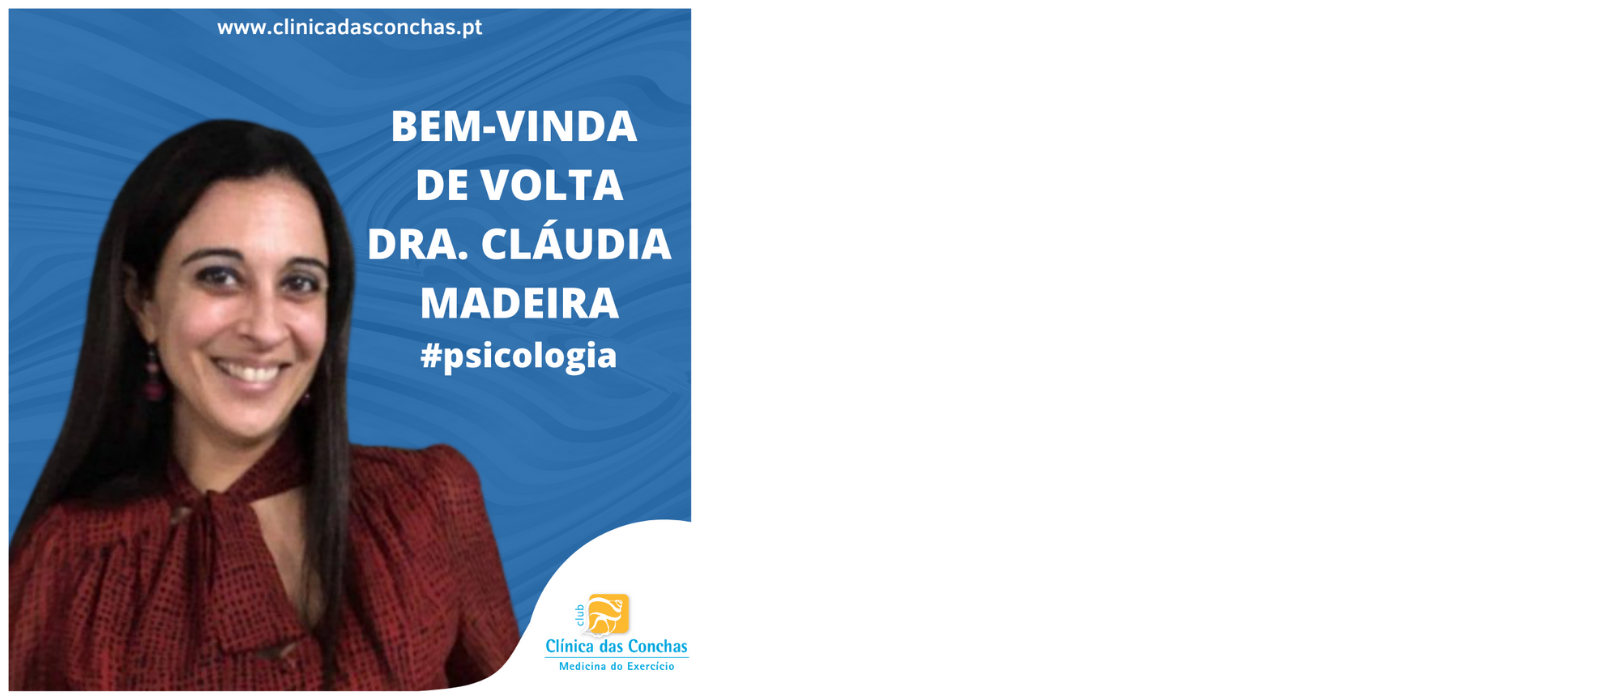 A Dra. Cláudia Madeira está de volta